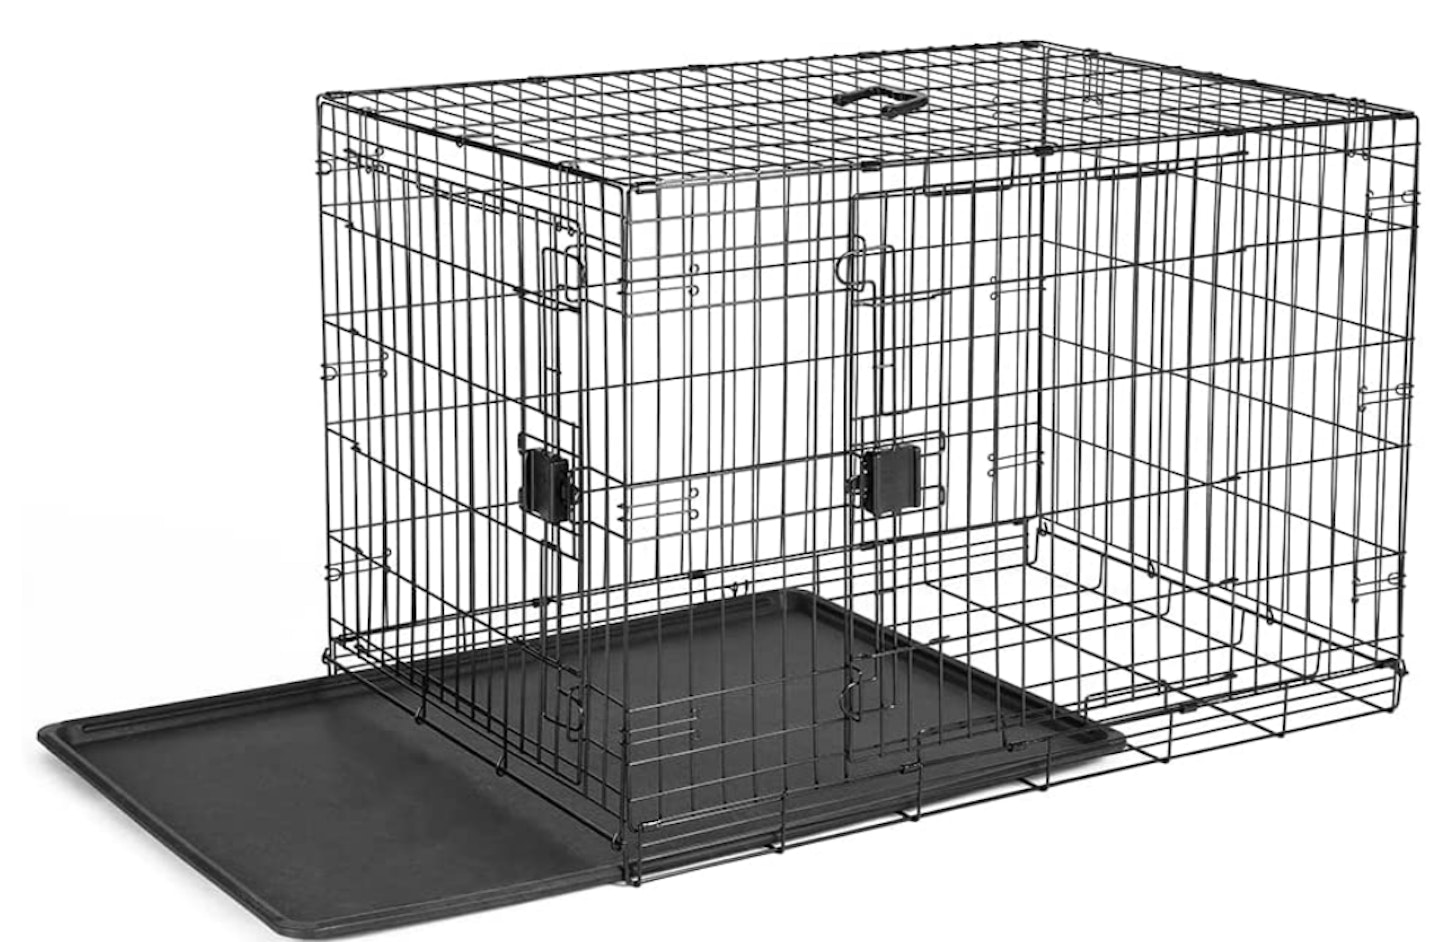 AmazonBasics dog crate